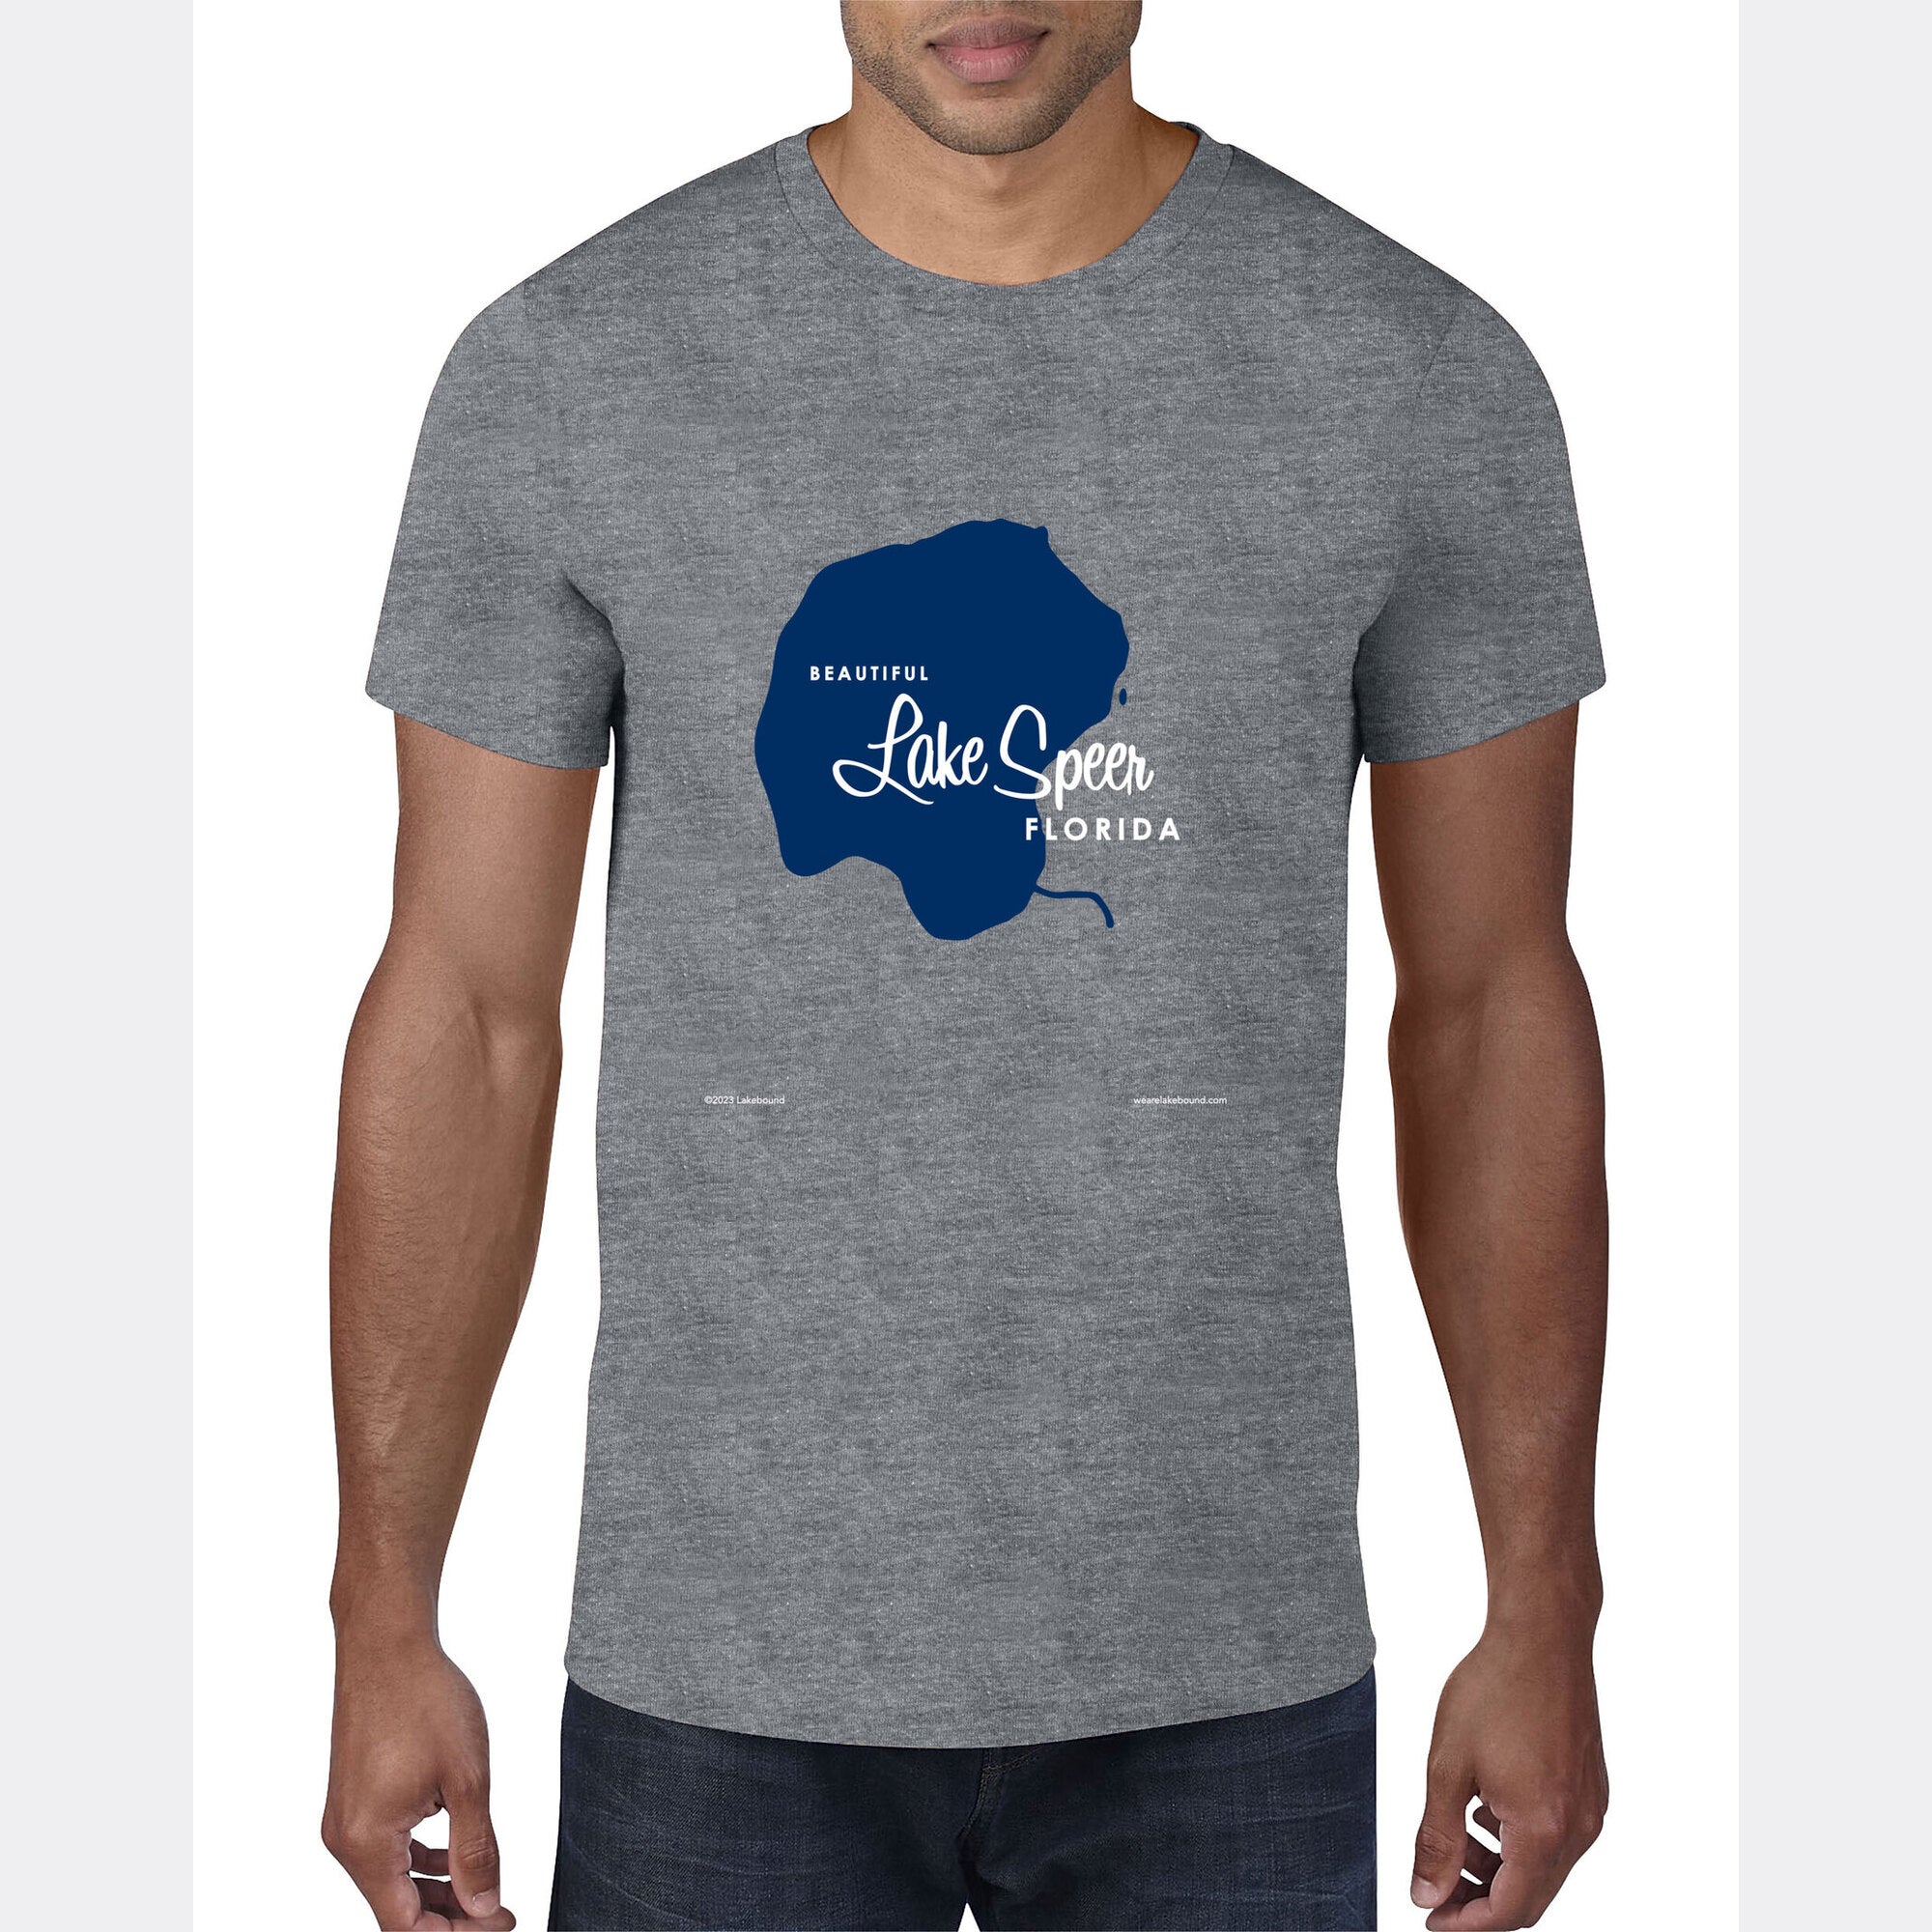 Lake Speer Florida, T-Shirt